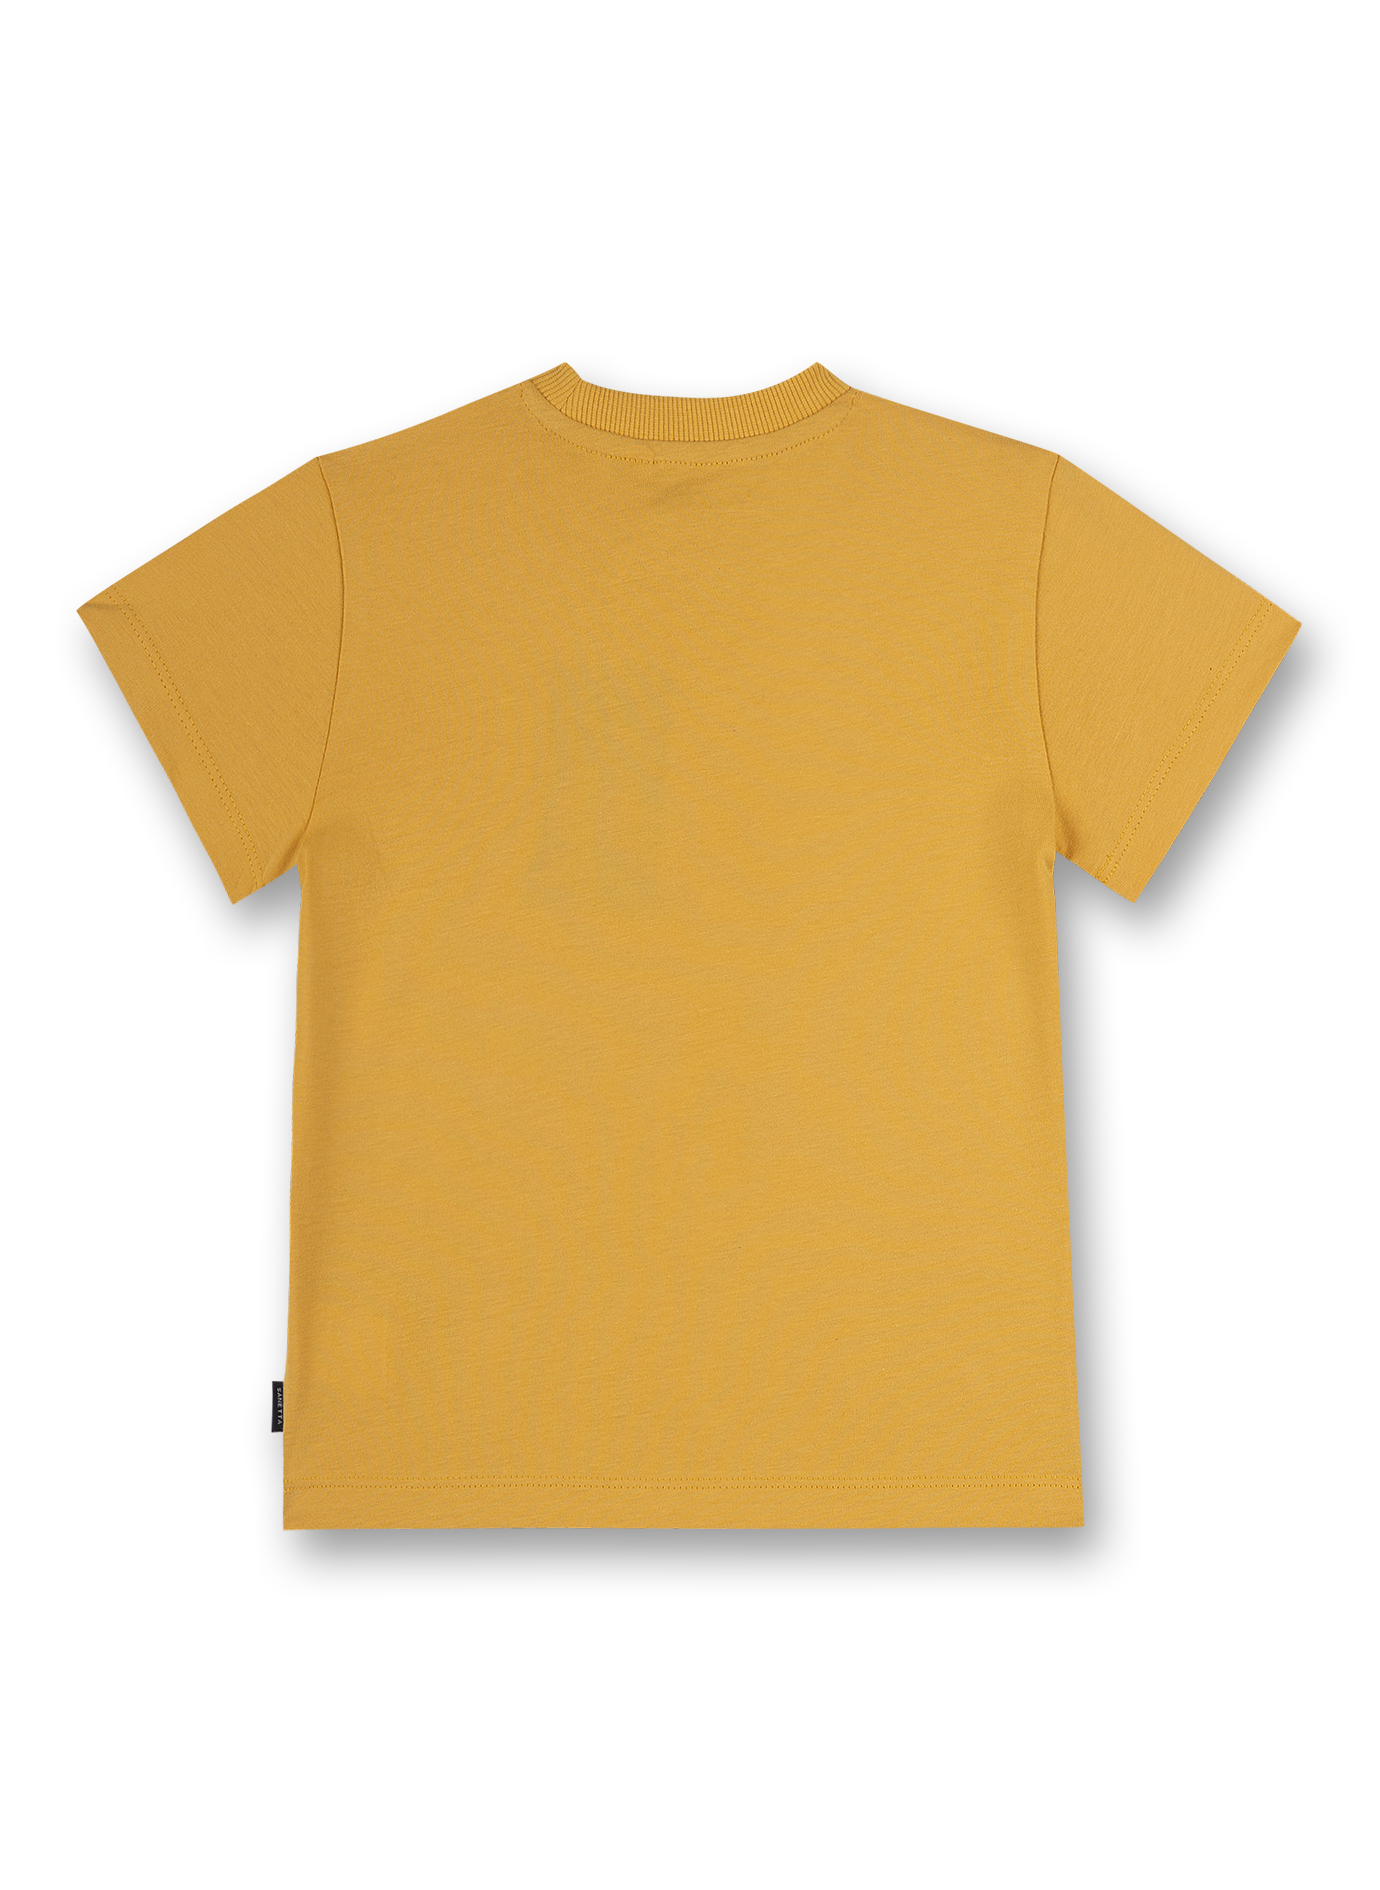 Jungen T-Shirt Gelb Music